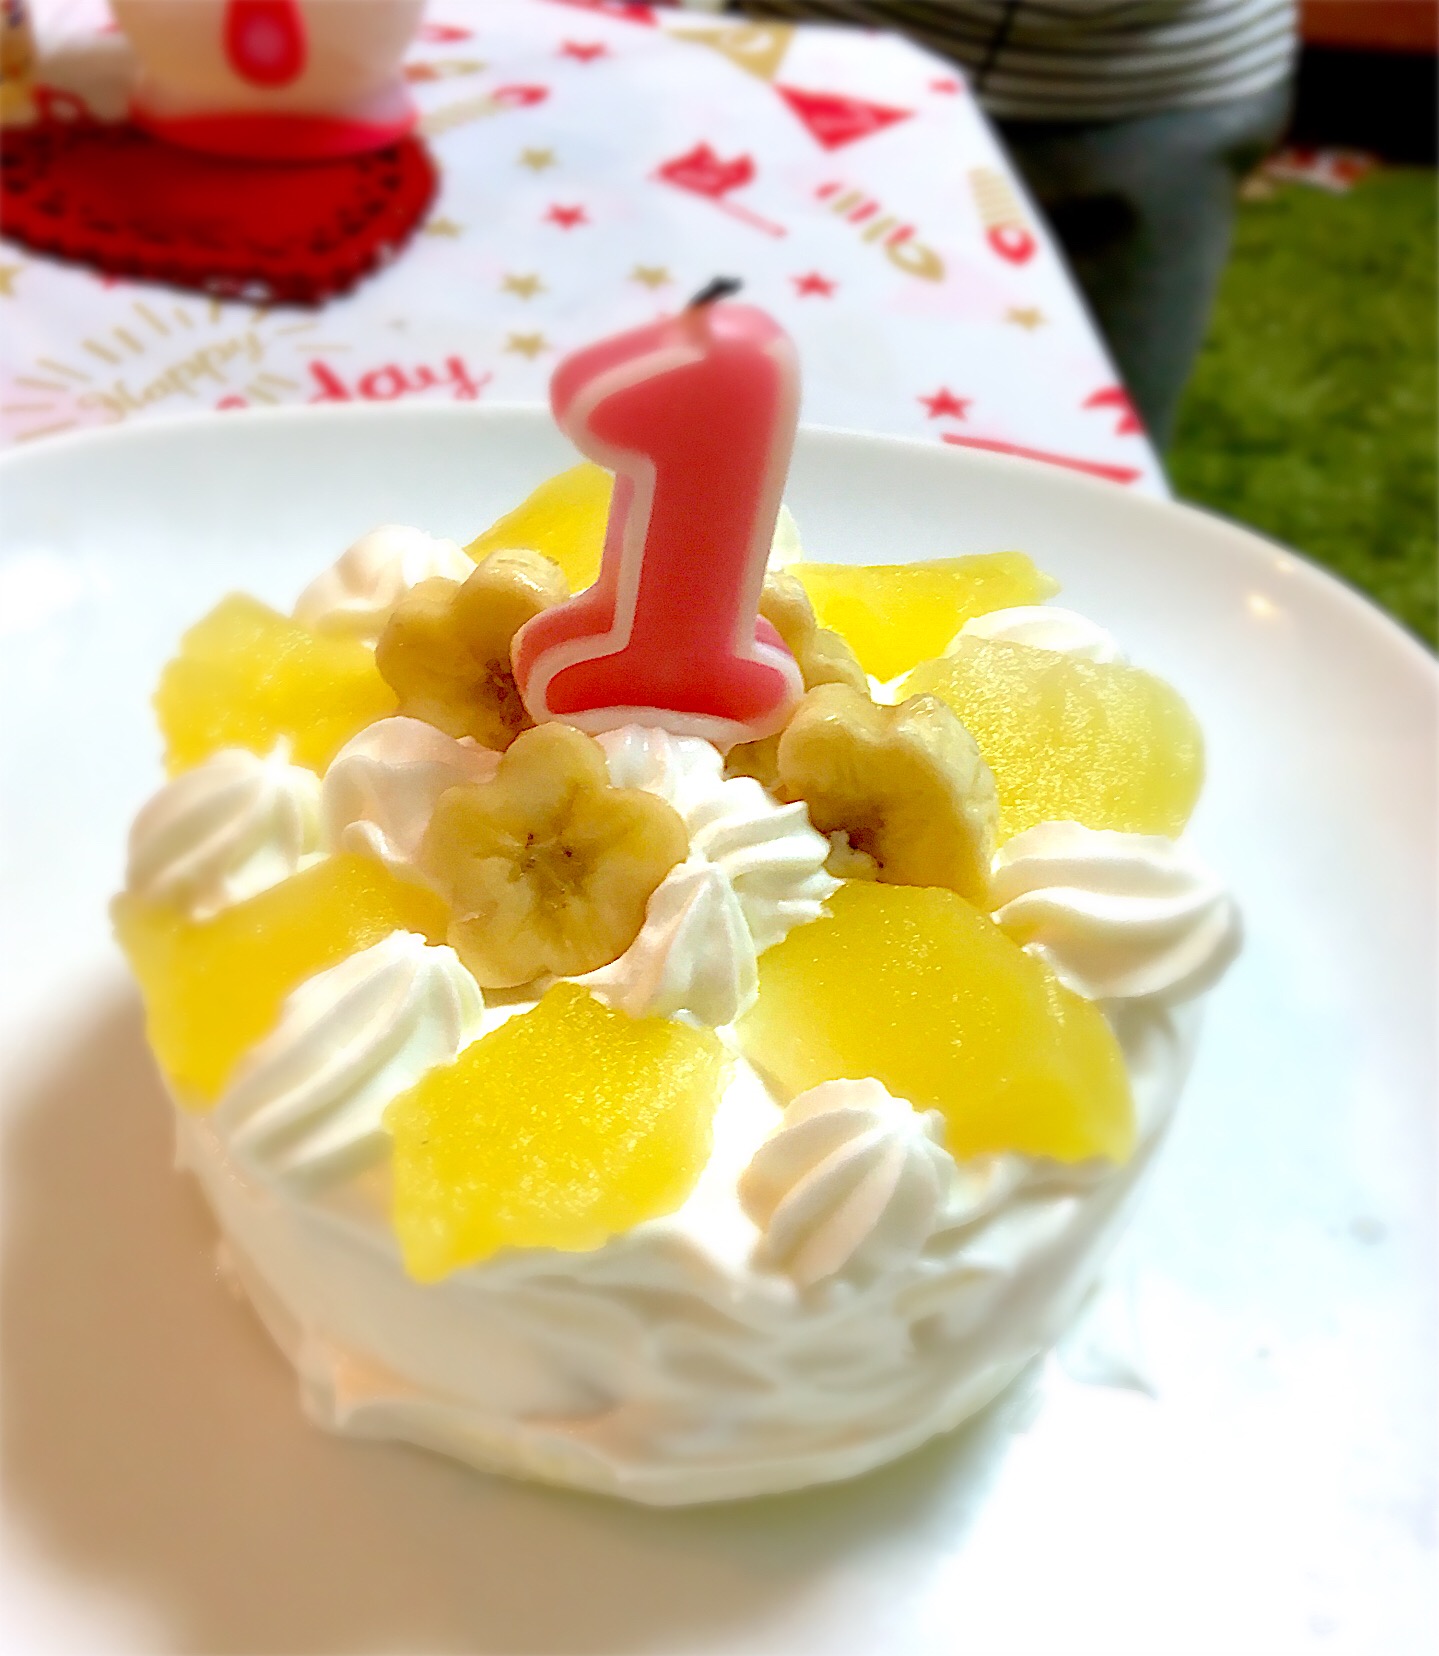 17 10 28 息子のお誕生日1歳赤ちゃんでも食べれるケーキ Kaori Snapdish スナップディッシュ Id D5vsja